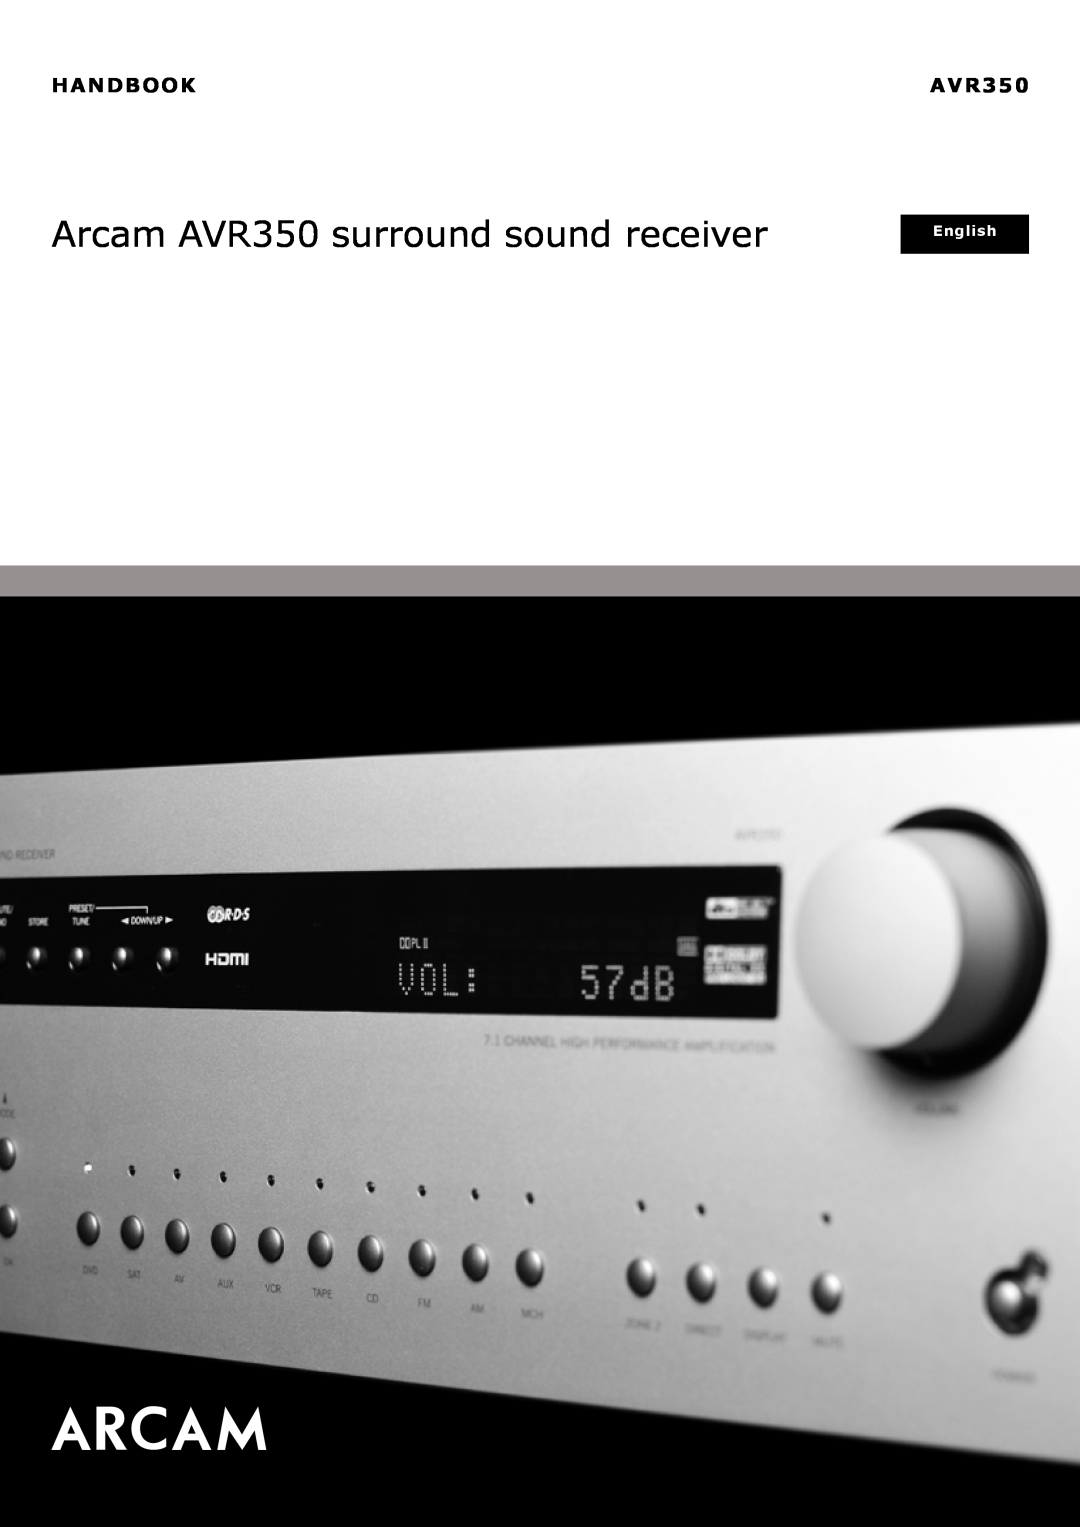 Arcam manual HANDBOOK/MANUEL/HANDBUCH/HANDLEIDINGAVR350, Arcam AVR350 surround sound receiver, Deutsch, English 